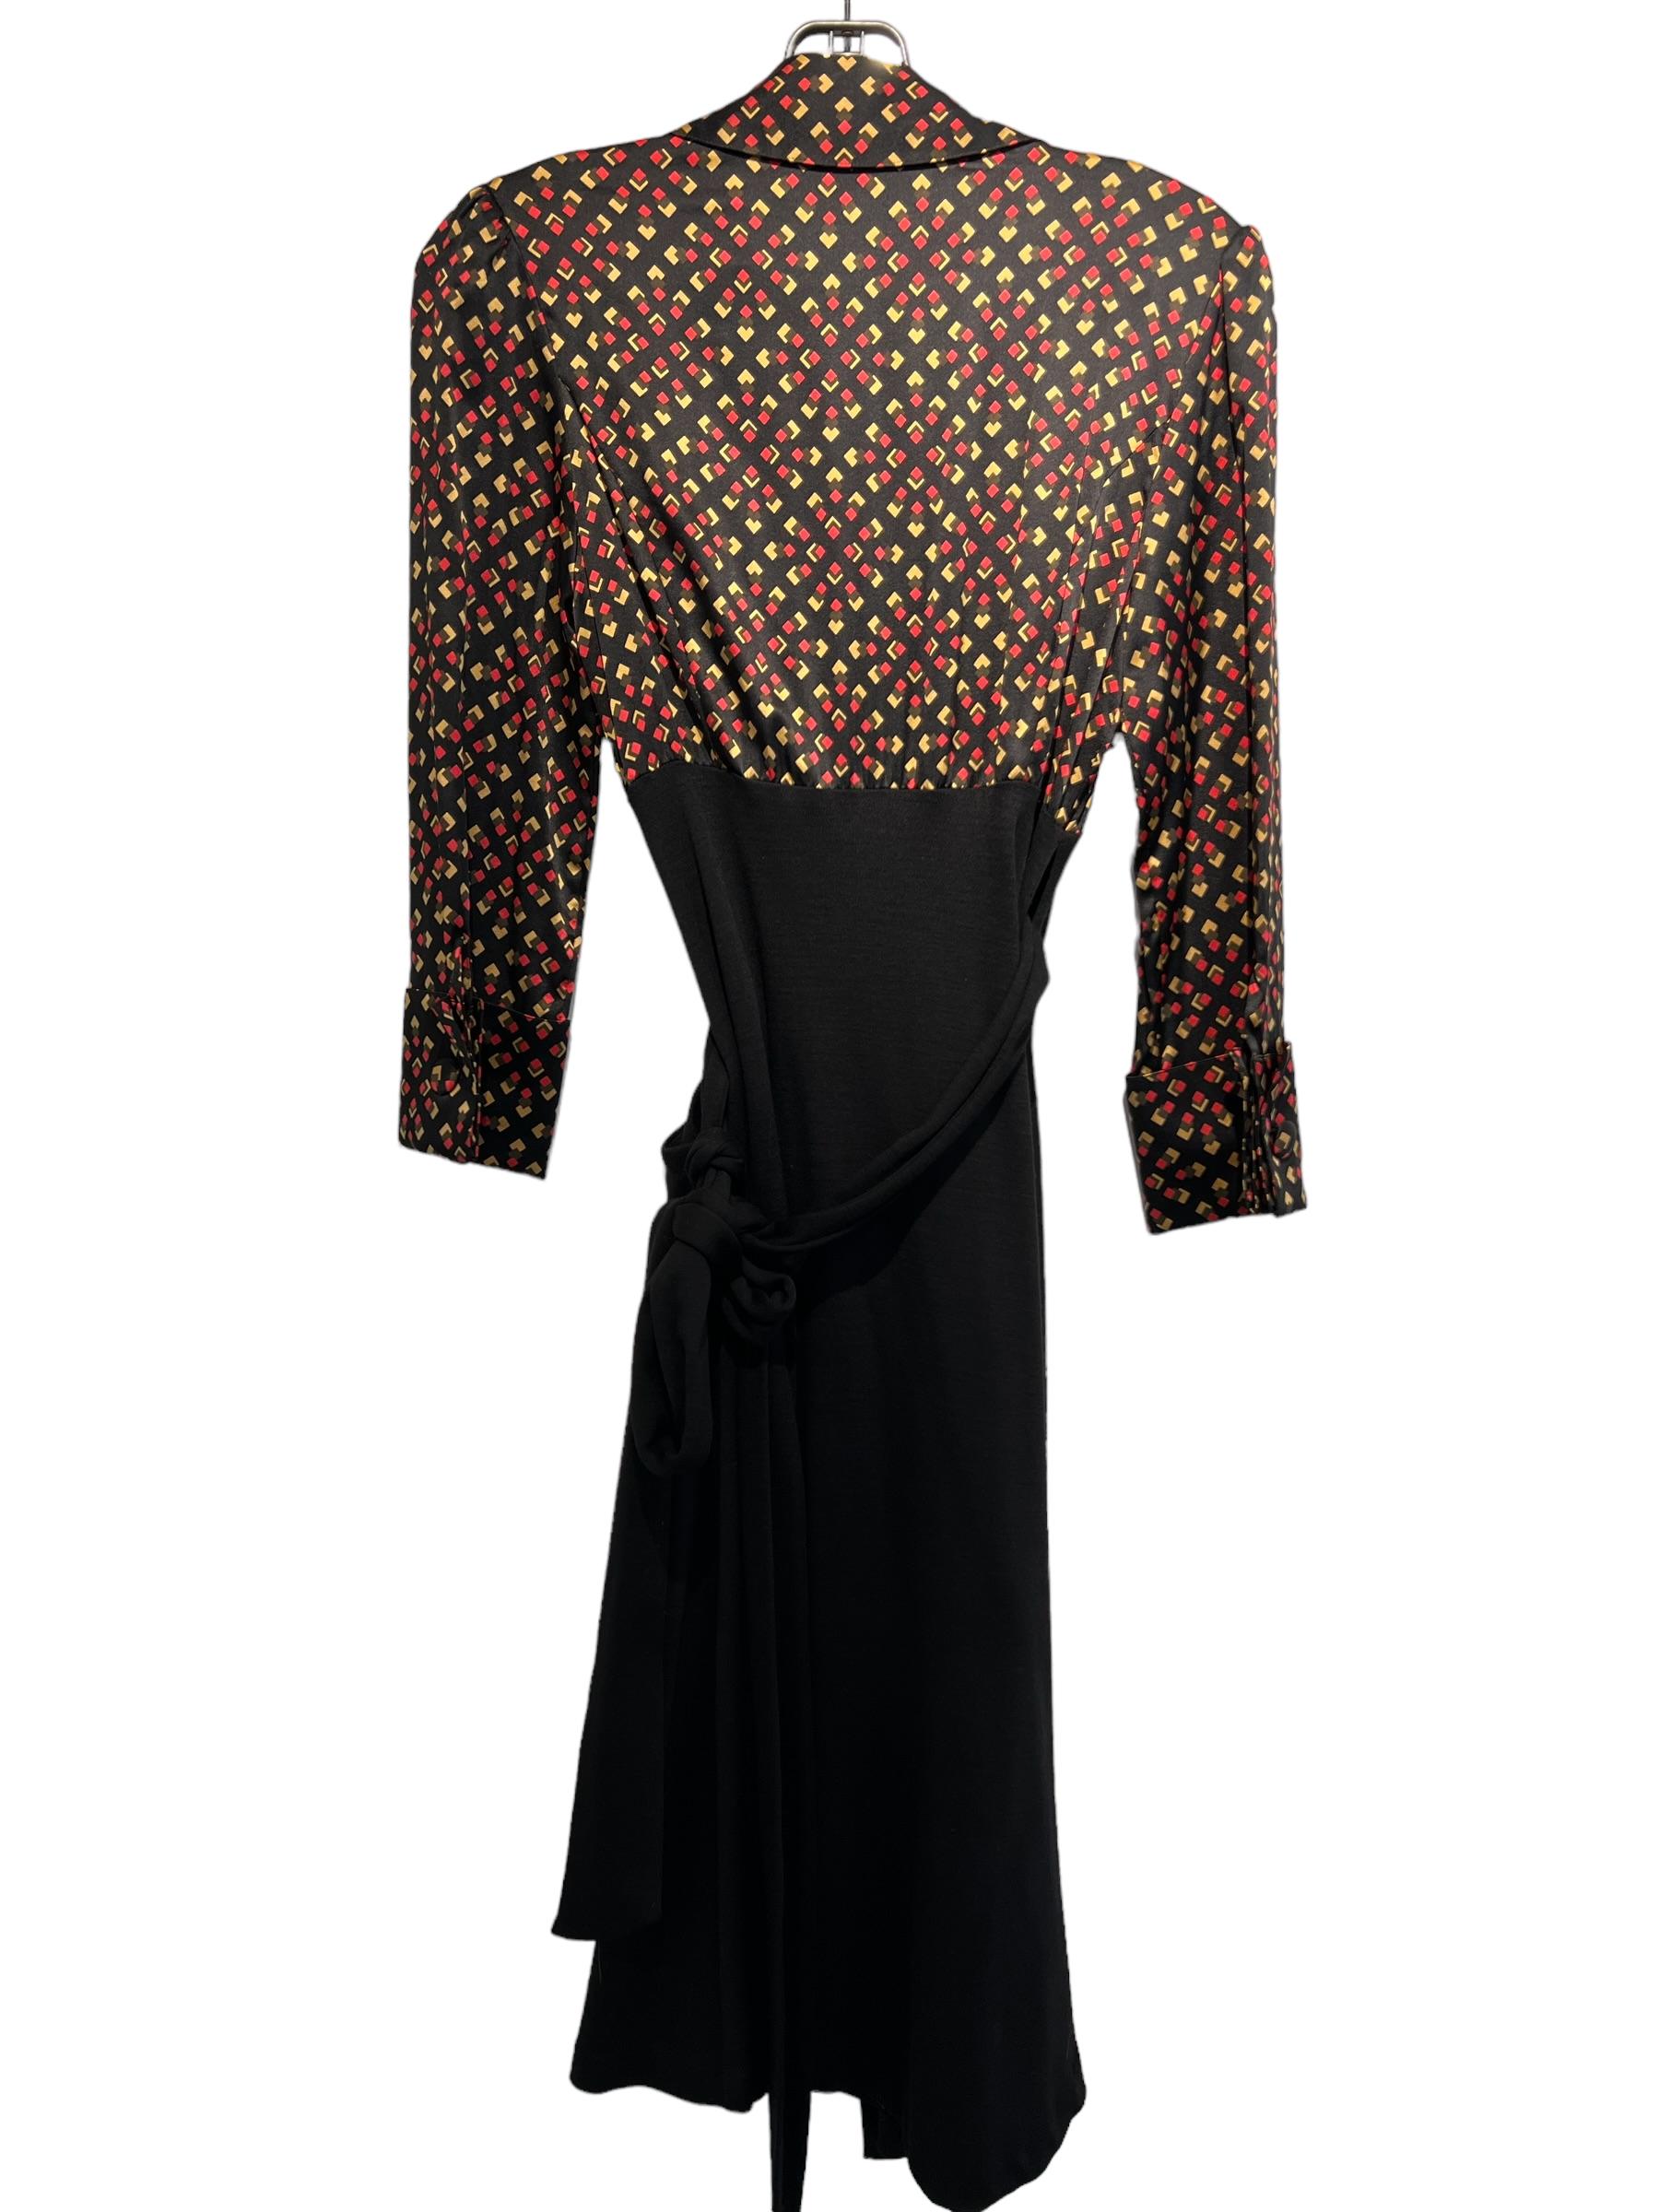 Black Diane Von Furstenberg Wool Long Sleeve Dress Size 6 